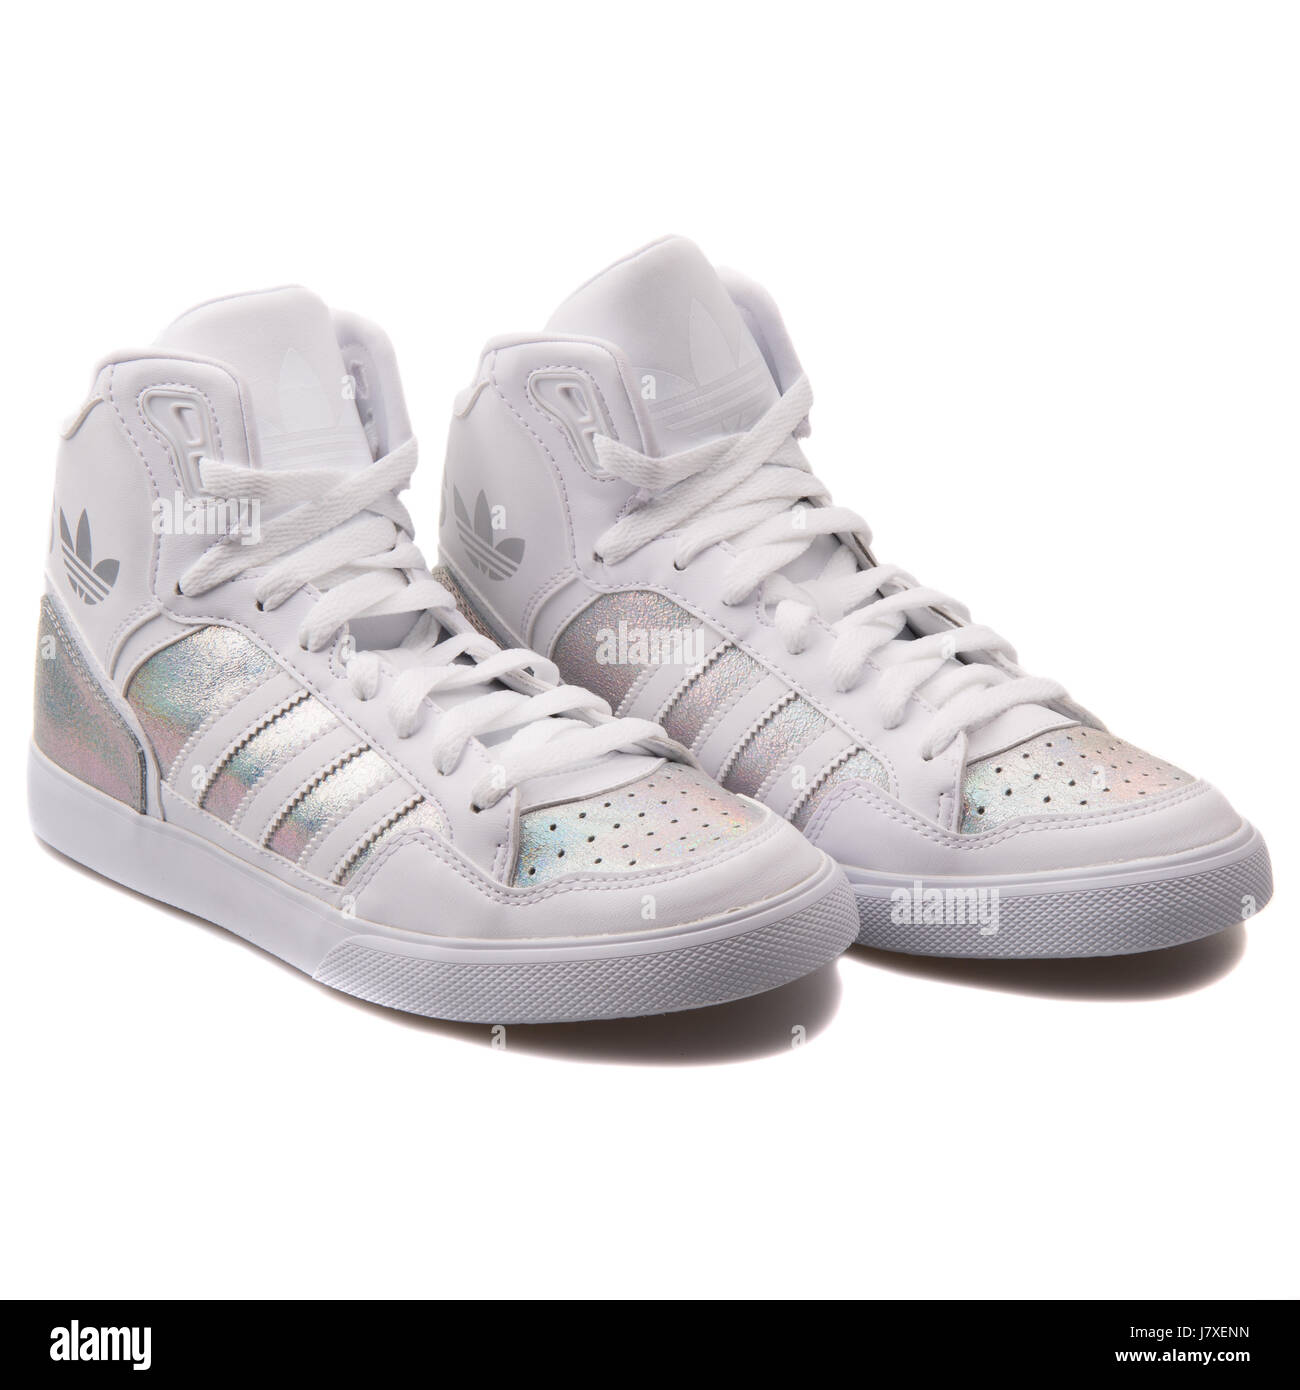 Adidas Extaball W Mujer Blanco iridiscente con cuero metalizado plata  Sneakers - S77398 Fotografía de stock - Alamy